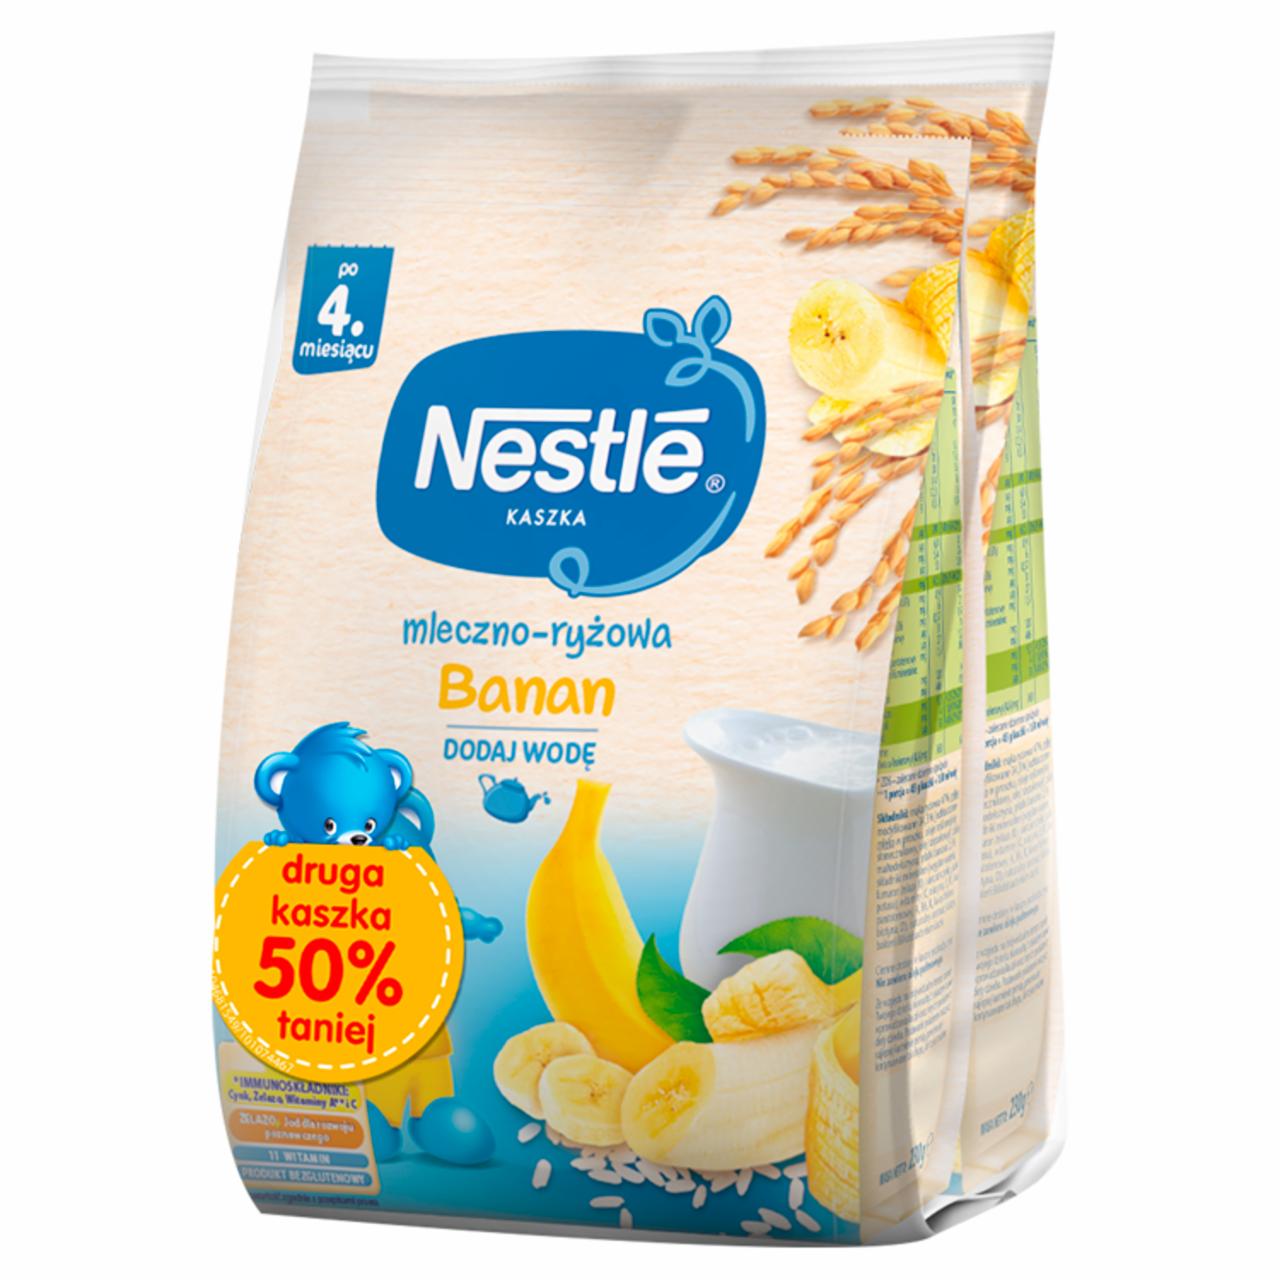 Zdjęcia - Nestlé Kaszka mleczno-ryżowa banan po 4. miesiącu 460 g (2 x 230 g)